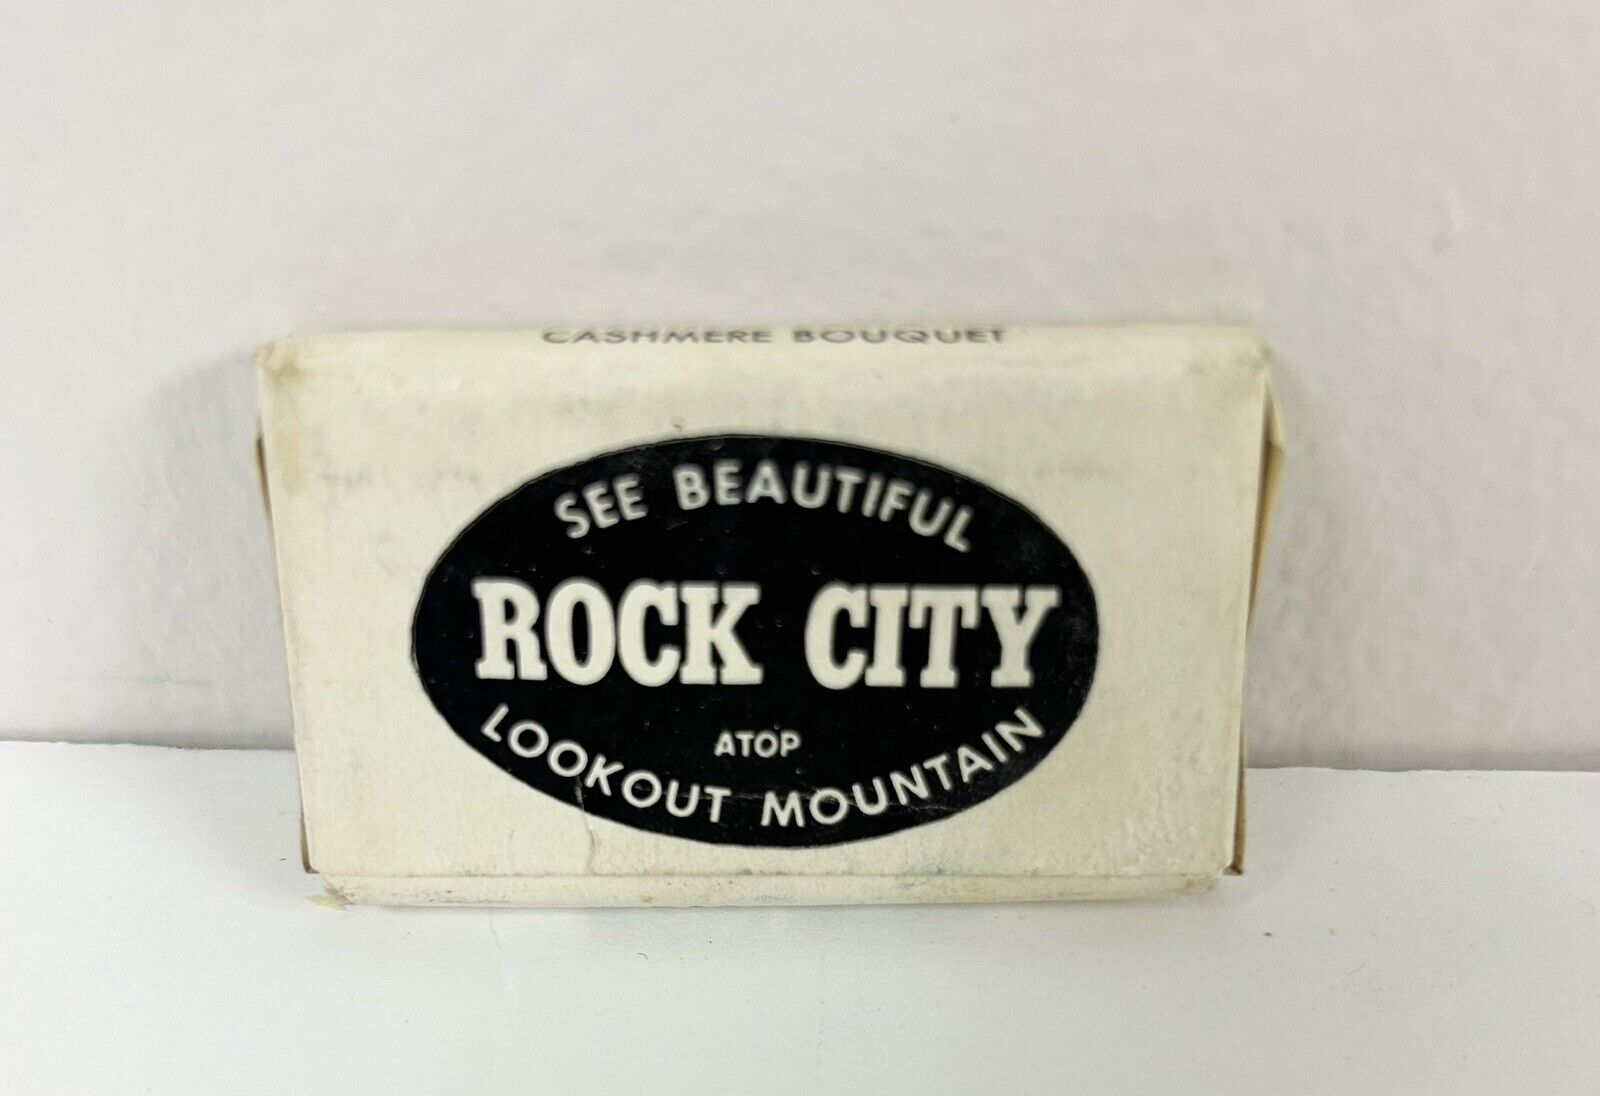 Vintage Rock City Travel Soap 1950’s Atop Lookout Mtn TN Cashmere Bouquet MCM